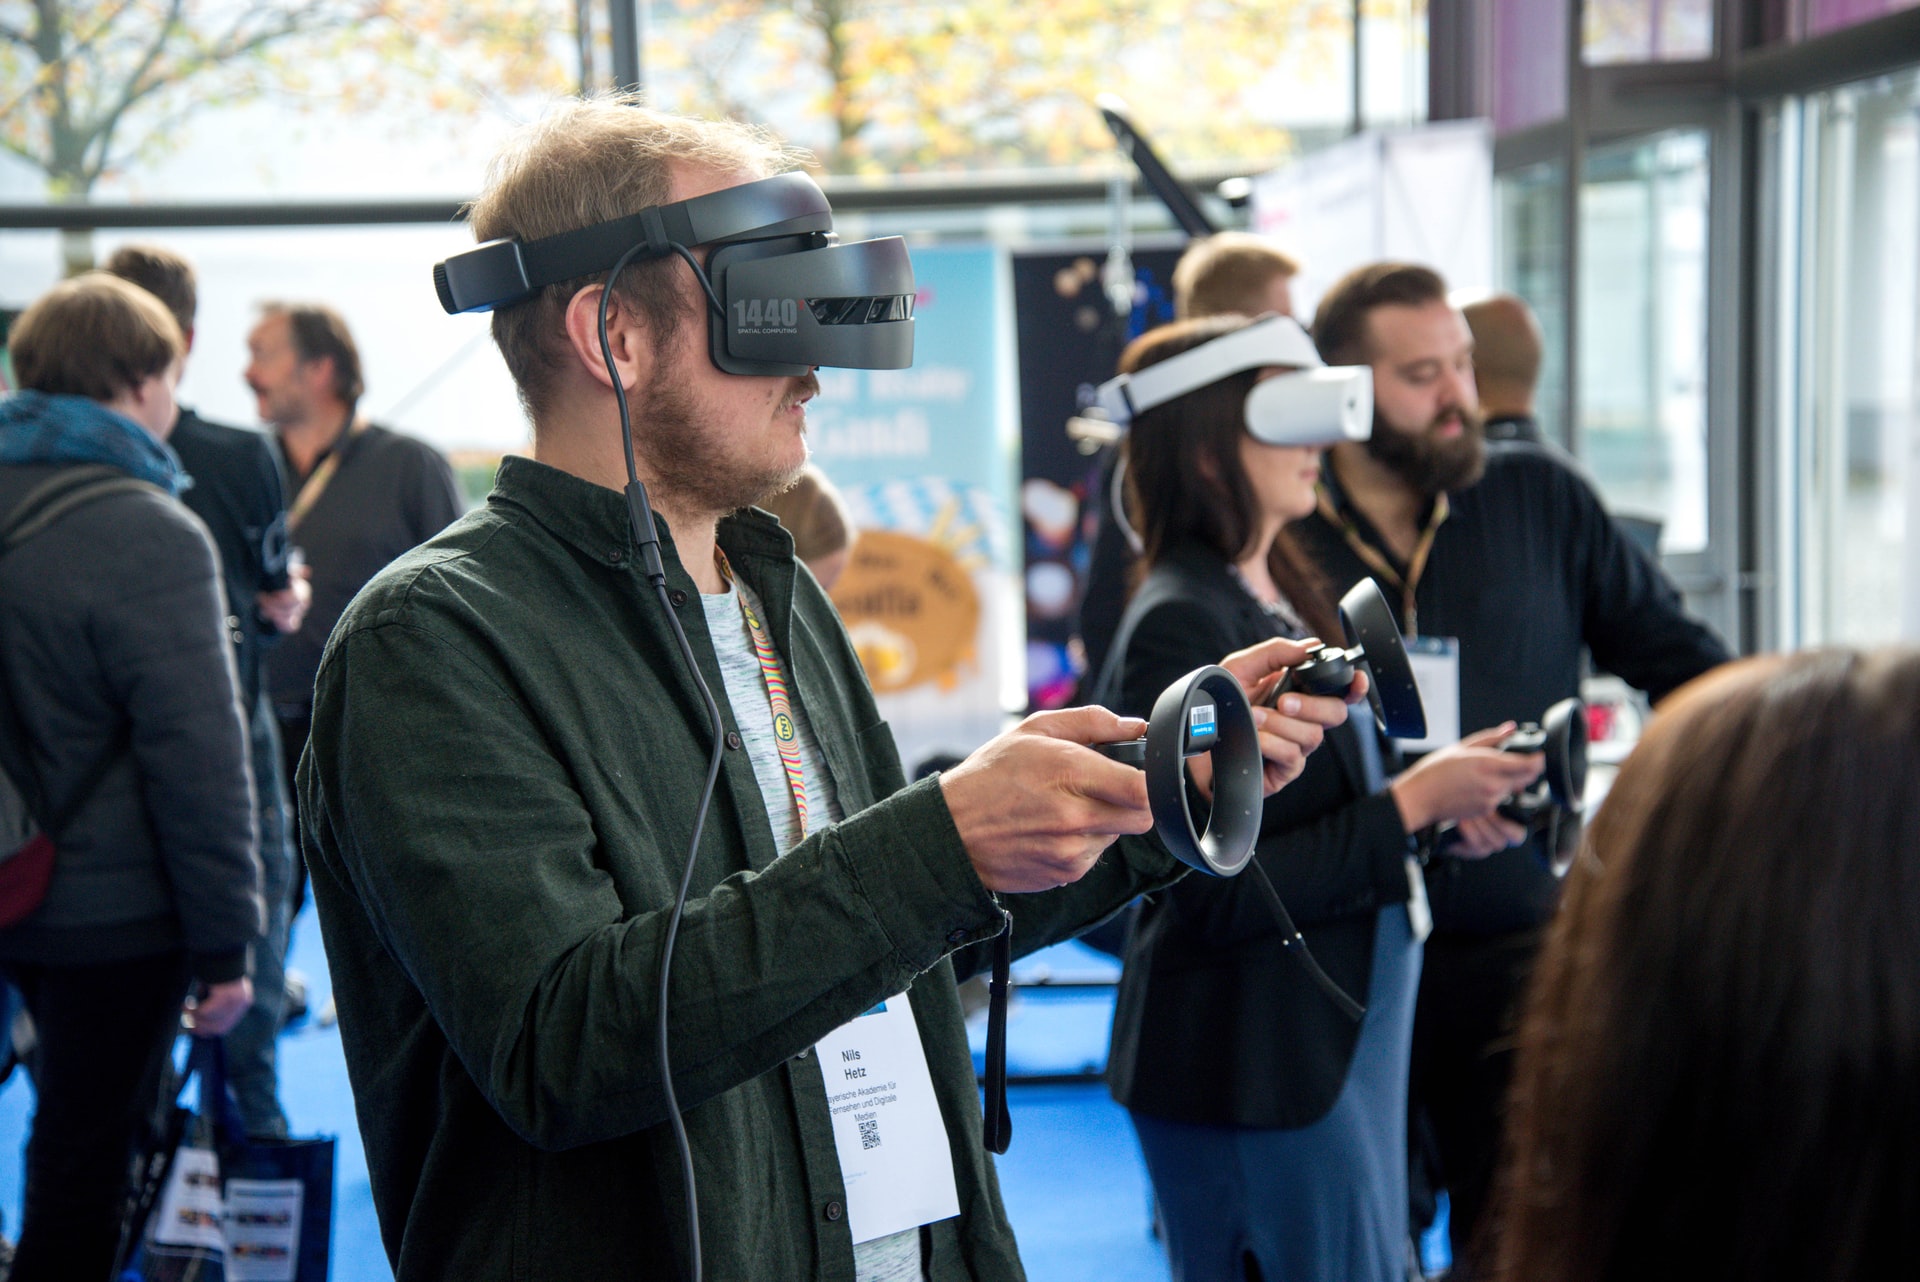 Digitaal tot leven komen met virtual reality